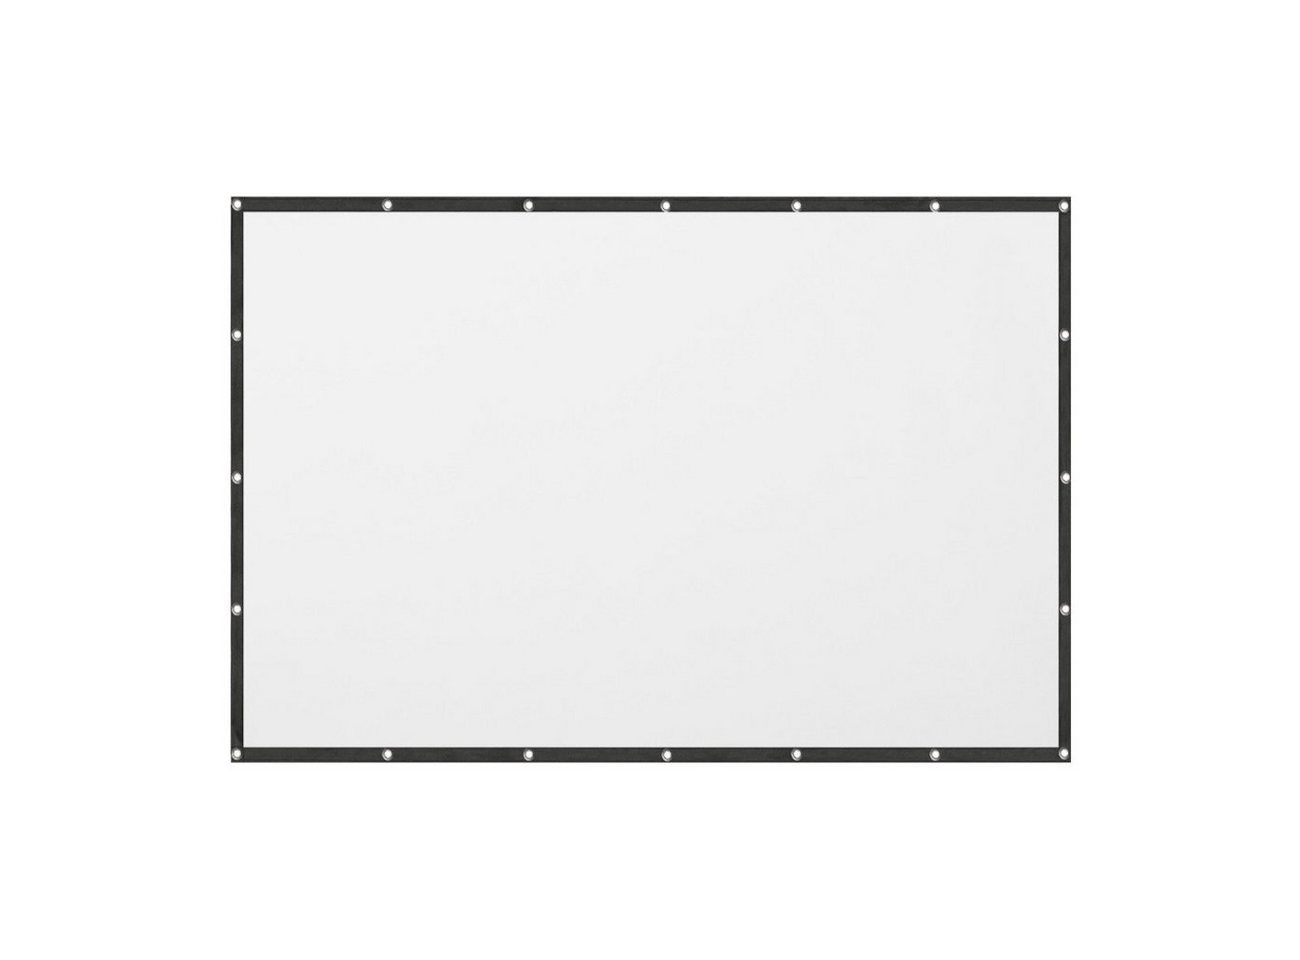 LA VAGUE LV-STA100FP PRO screen 16/9 100 zoll weiß/schwarz Faltrahmenleinwand (Leinwand für Frontprojektion, 16:9 100 Zoll) von LA VAGUE